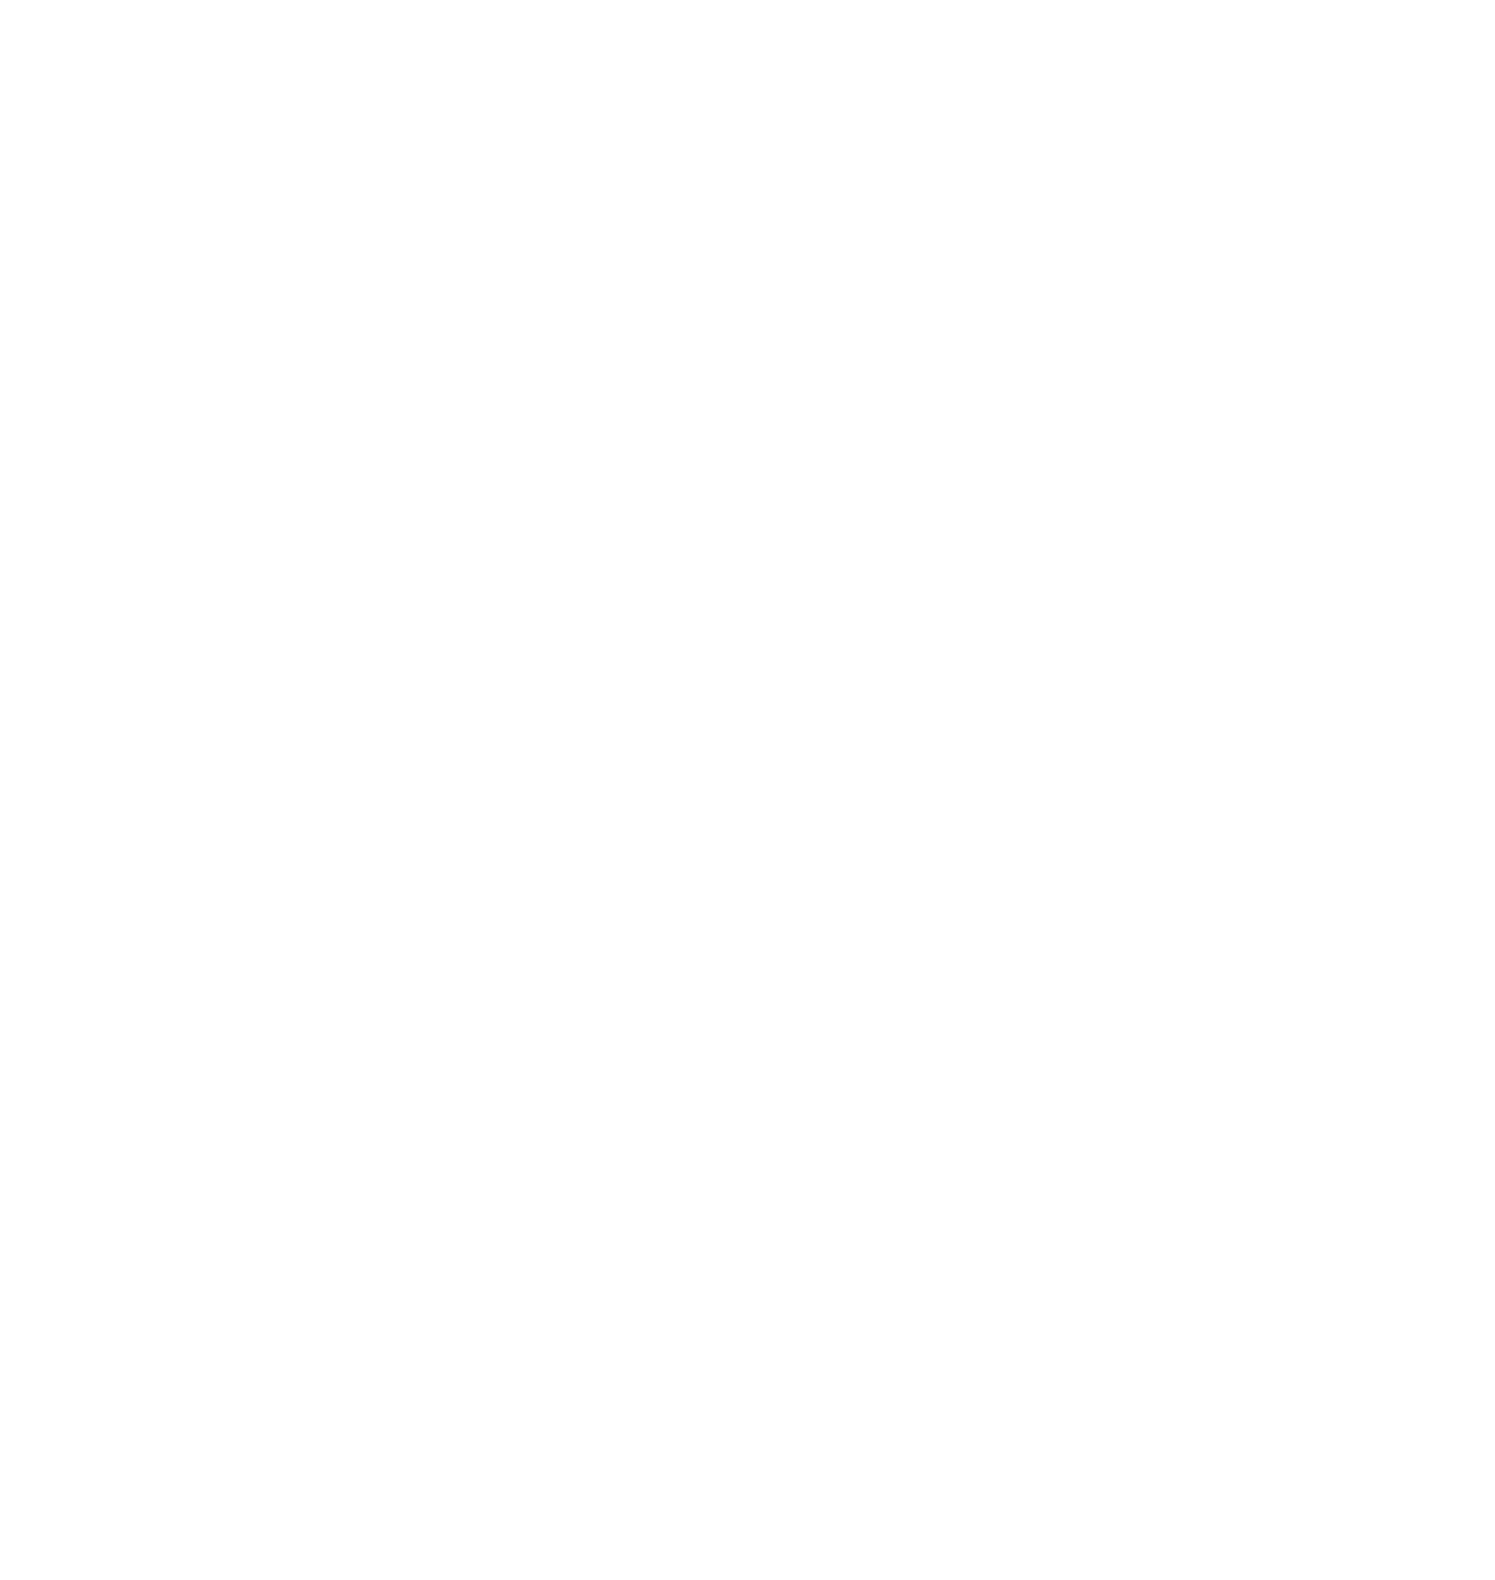 Dassault Systèmes logo for dark backgrounds (transparent PNG)